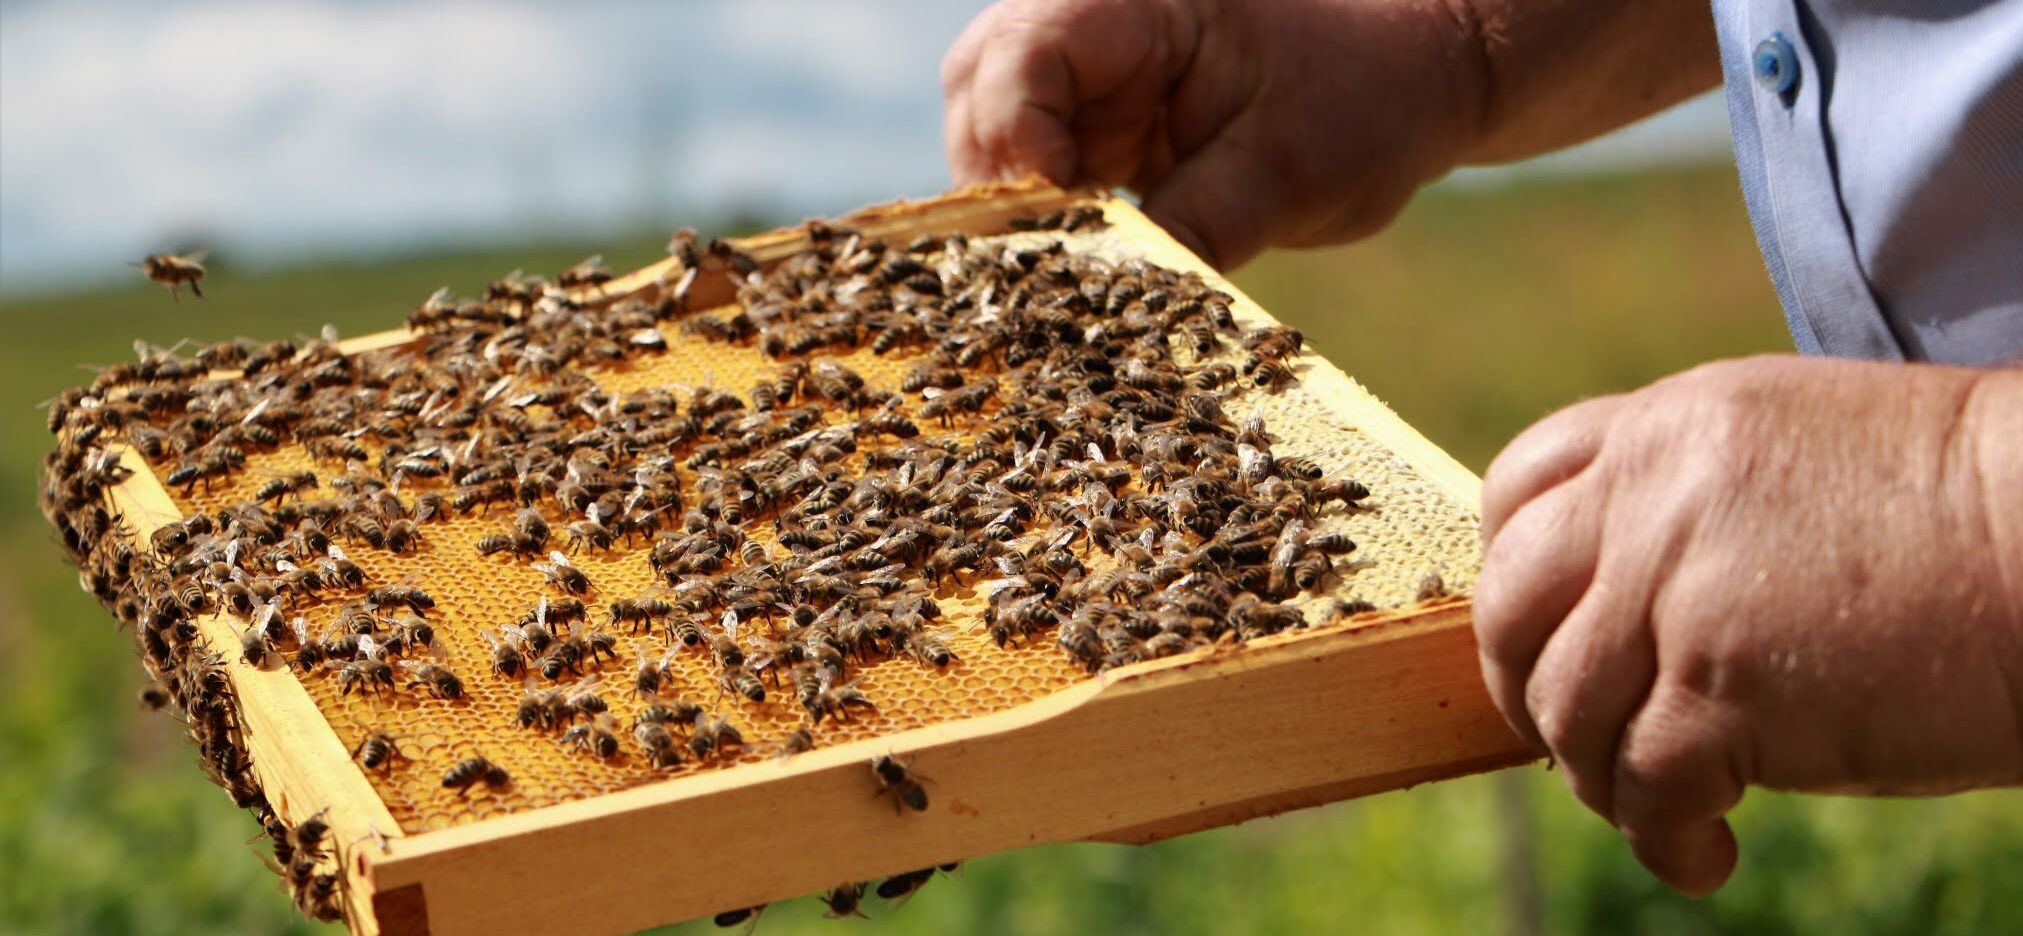 Pszczoły na tacce z miodem